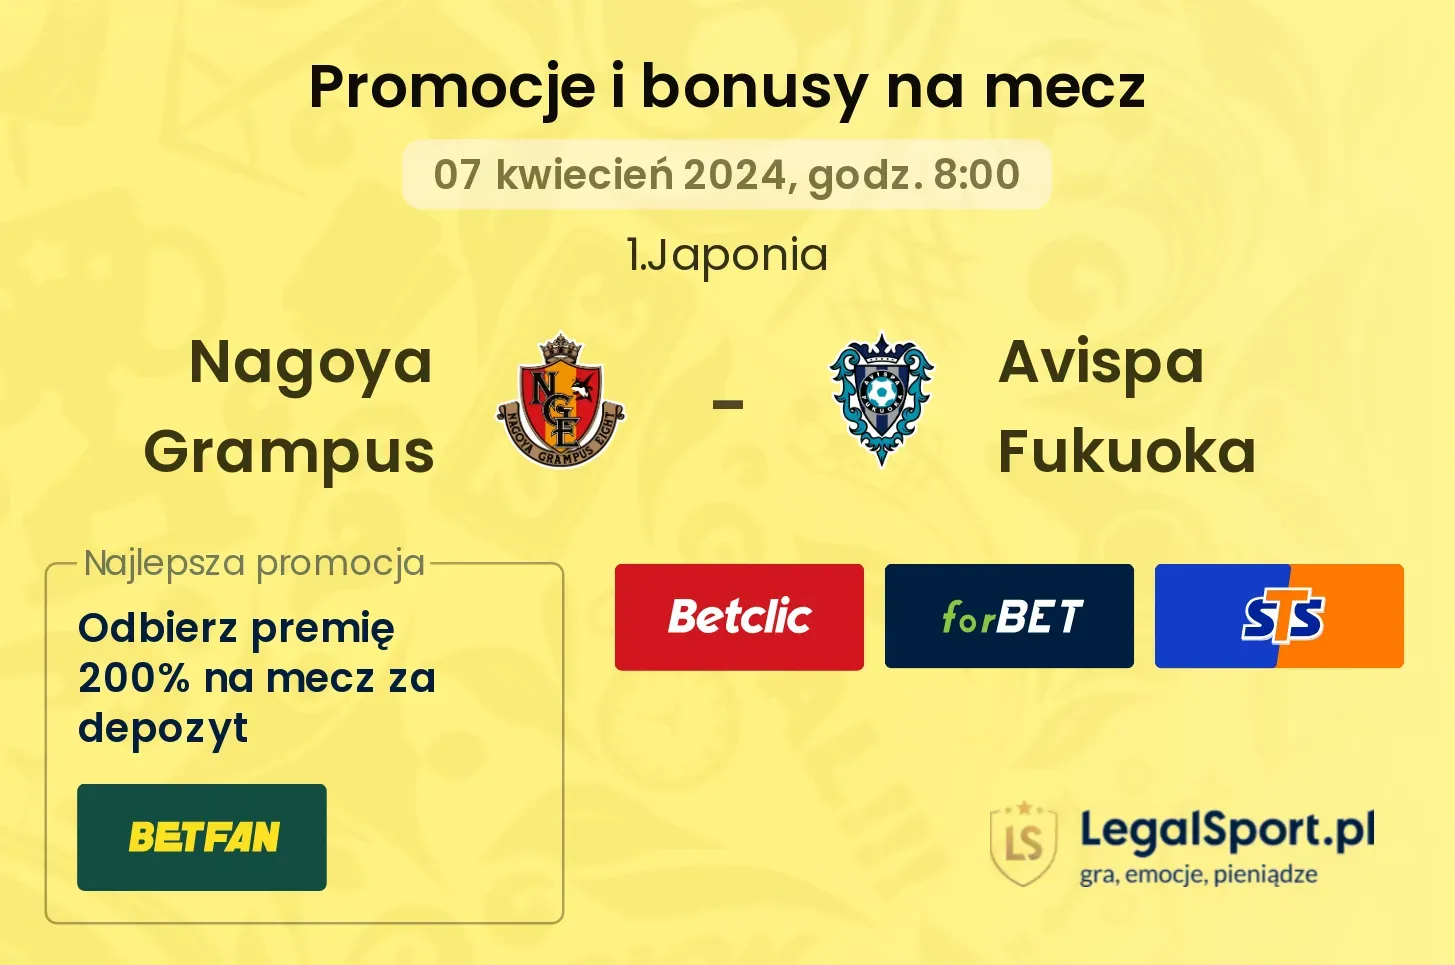 Nagoya Grampus - Avispa Fukuoka bonusy i promocje (07.04, 08:00)